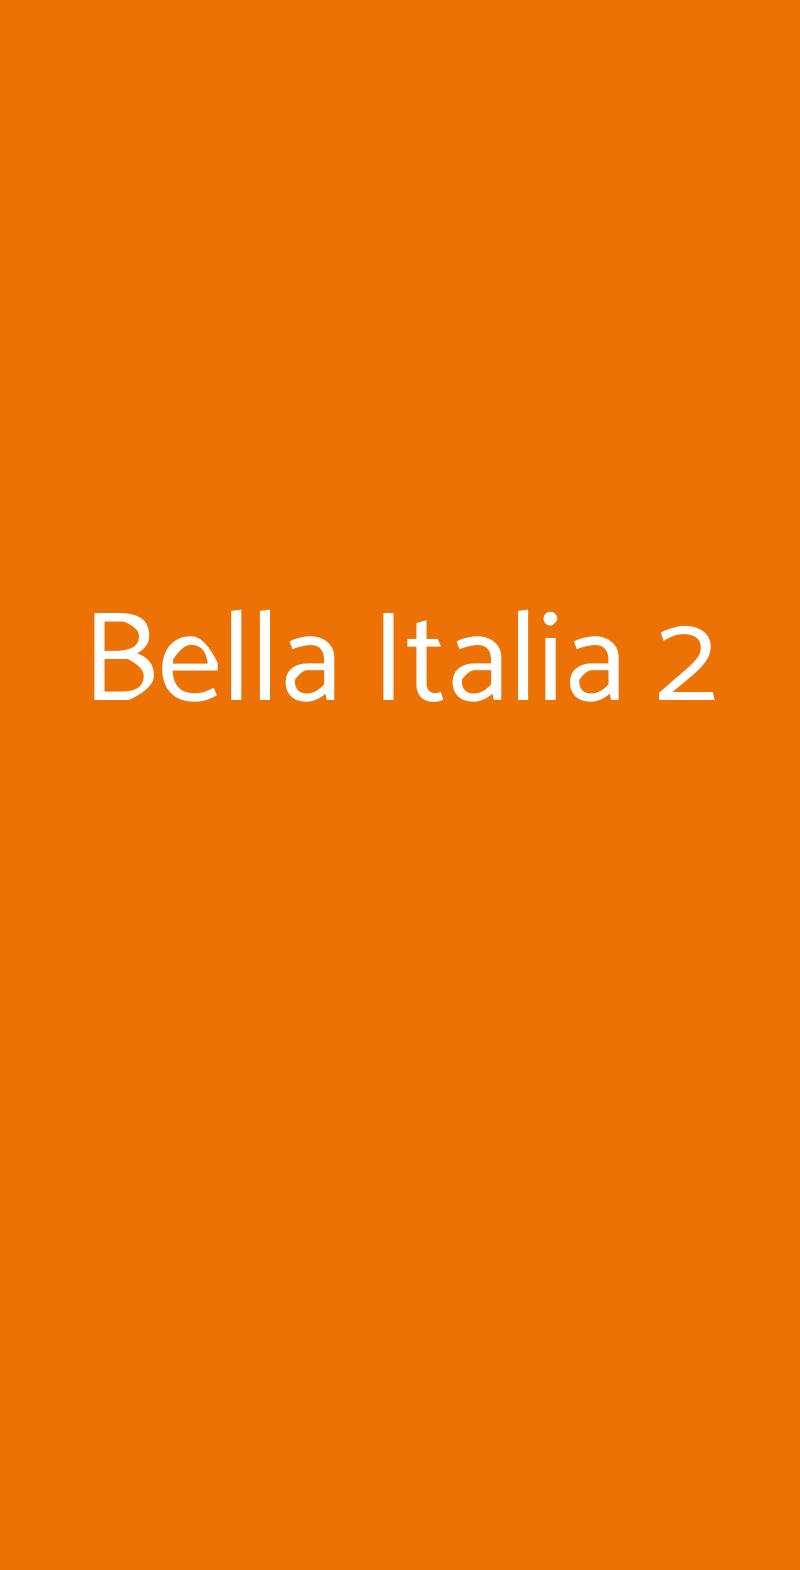 Bella Italia 2 Milano menù 1 pagina